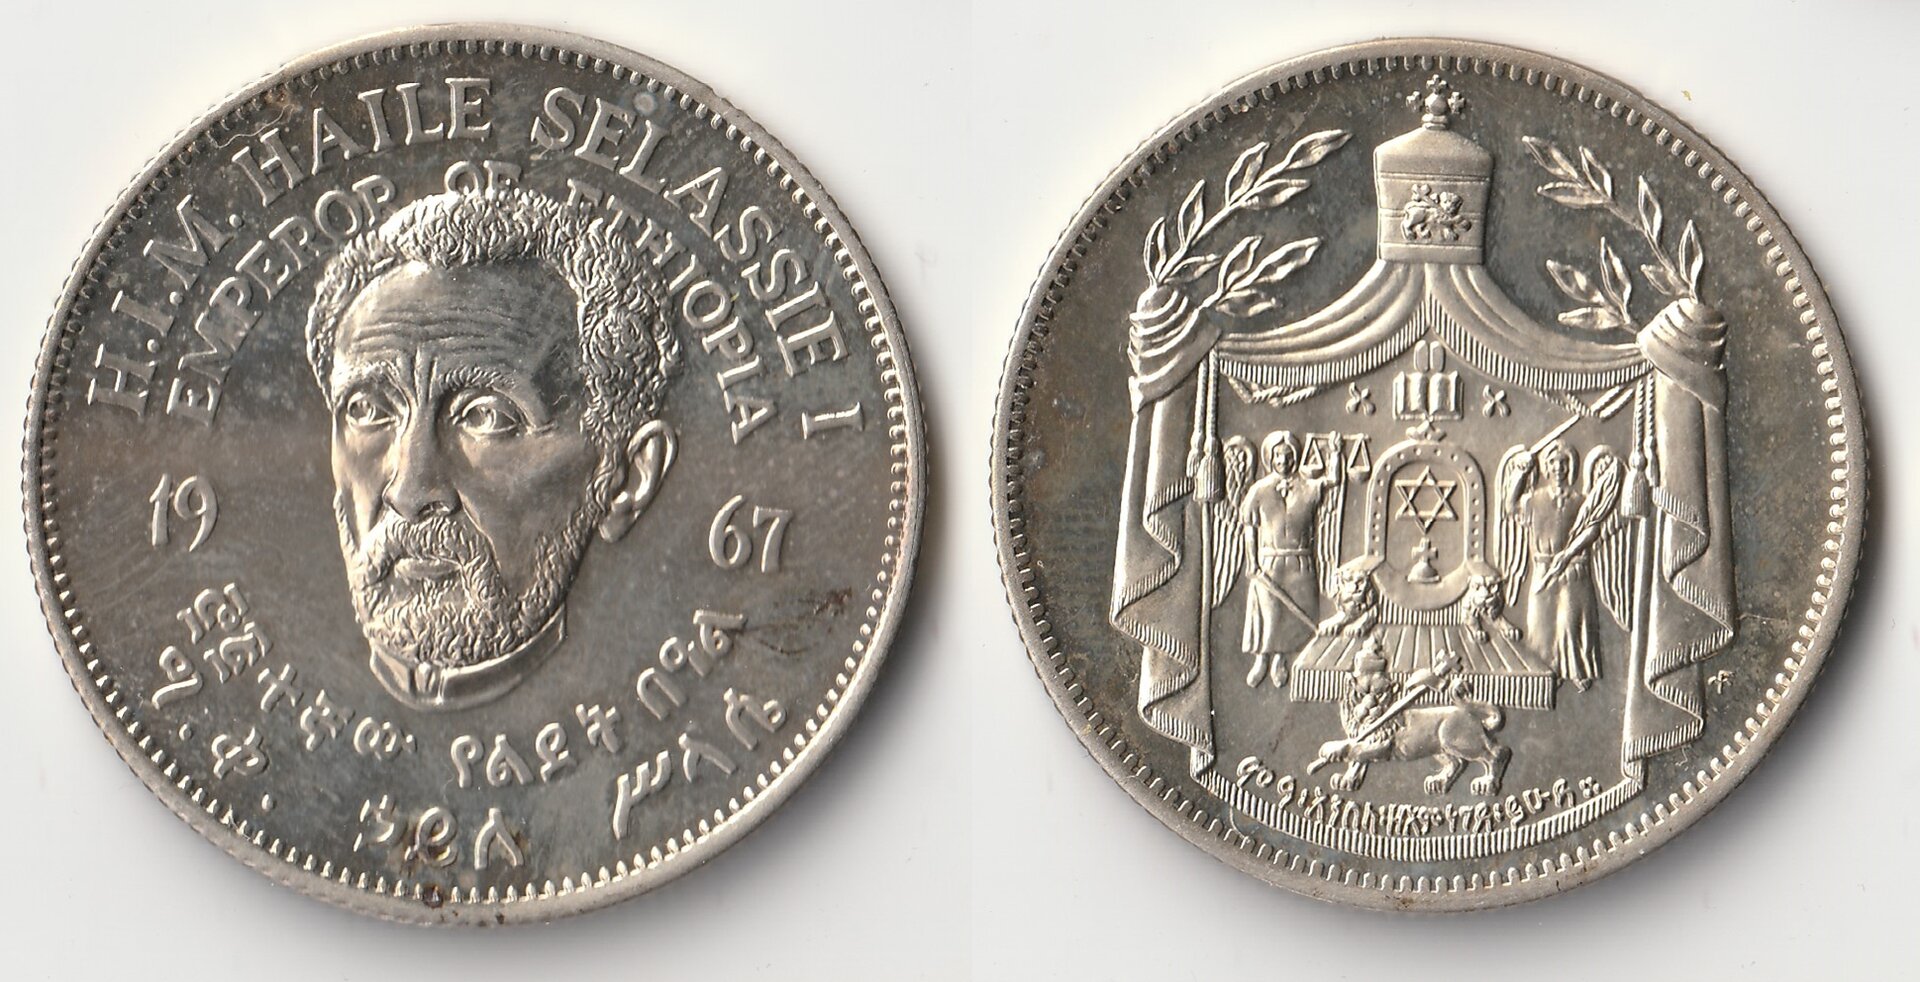 1967 ethiopia 1 crown.jpg